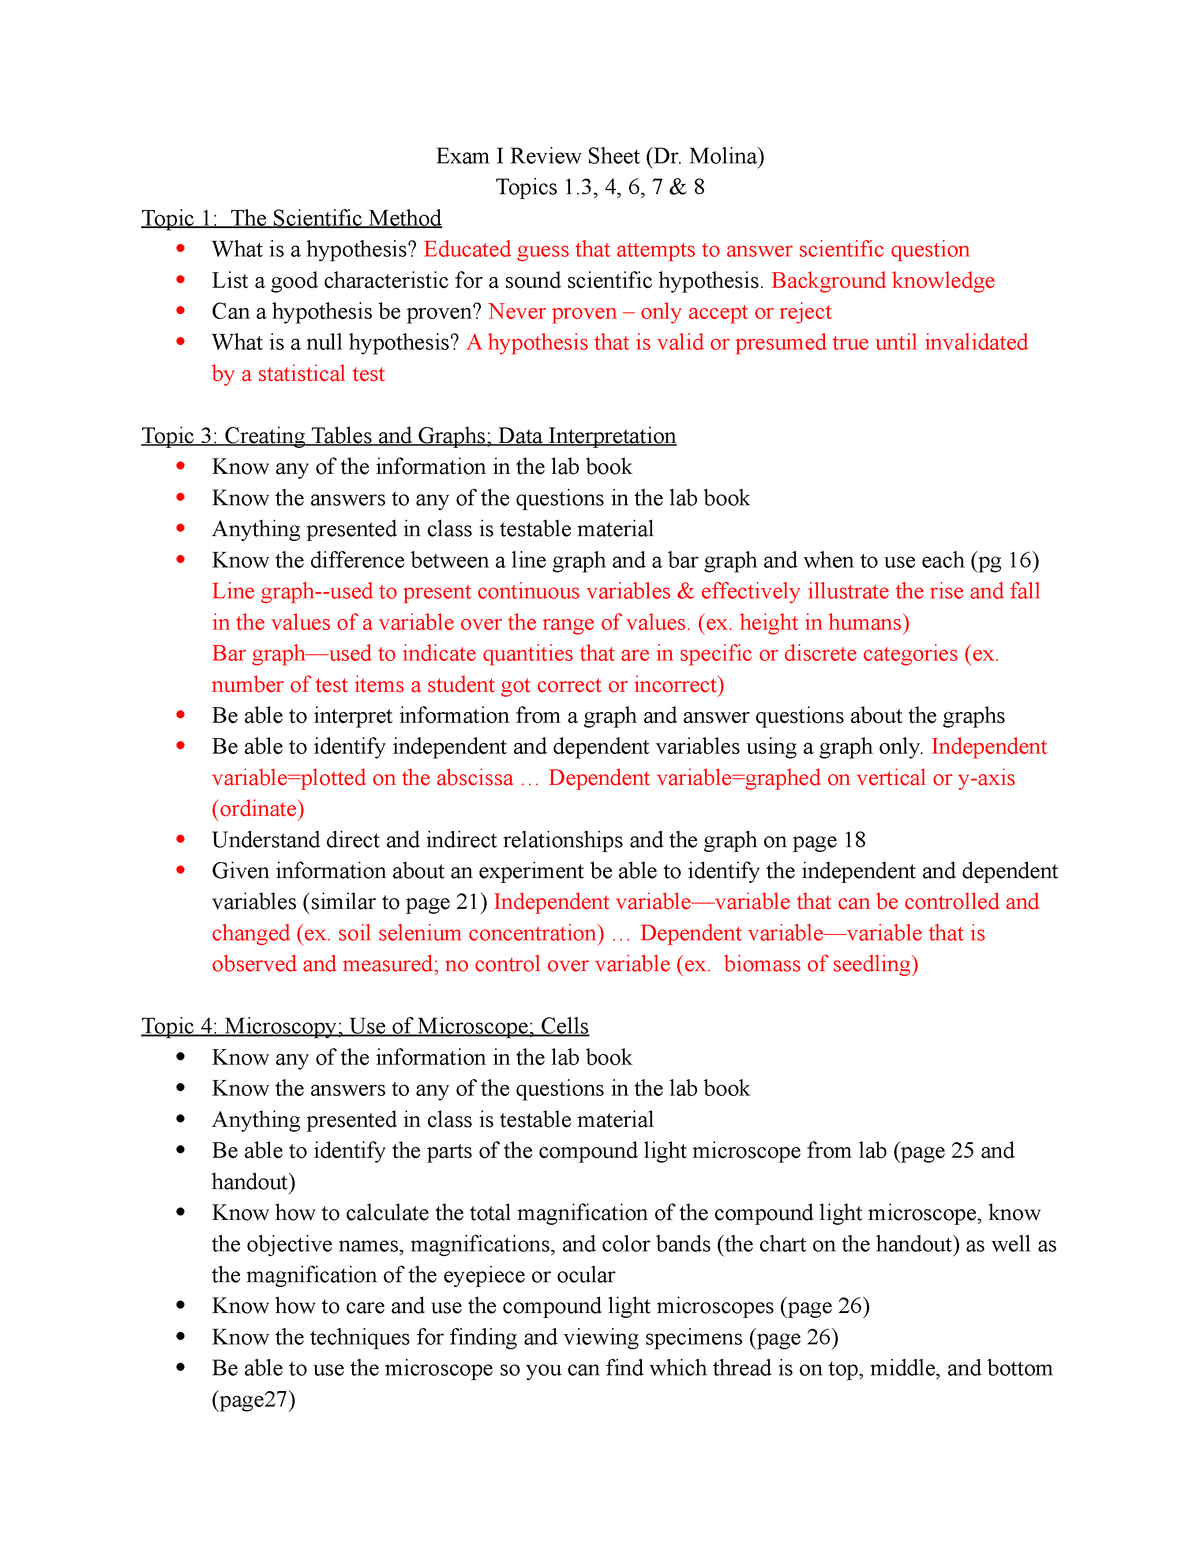 BIOL 1406 Lab Exam 1 Review - Exam I Review Sheet (Dr. Molina) Topics 1 ...